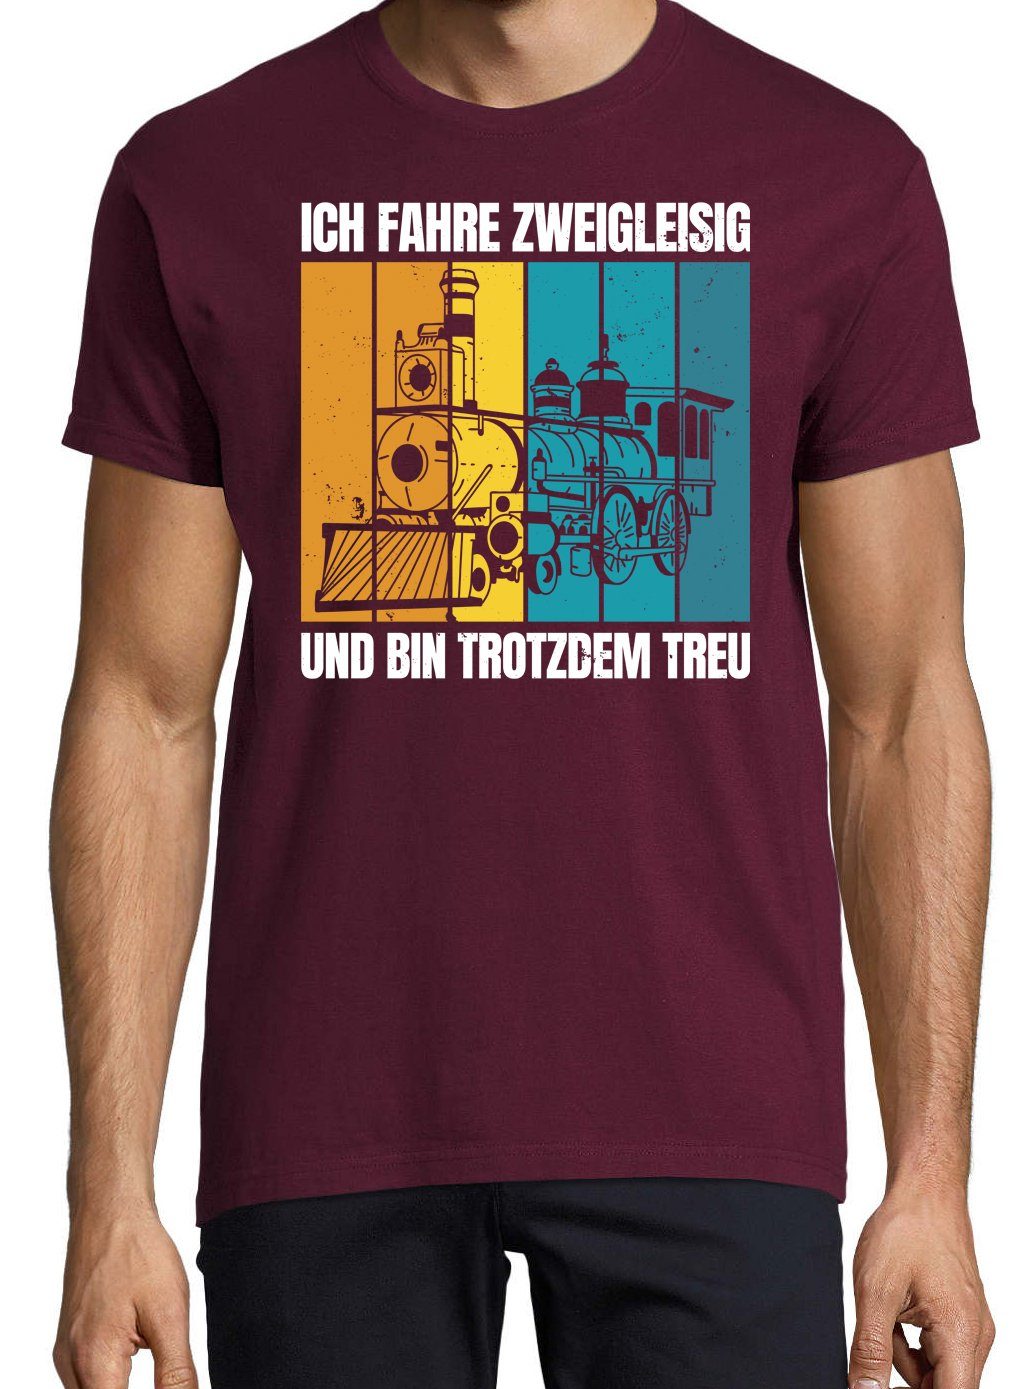 Youth Designz T-Shirt Zweigleisig Shirt Trotzdem Und lustigem Treu Herren Burgund mit Frontprint